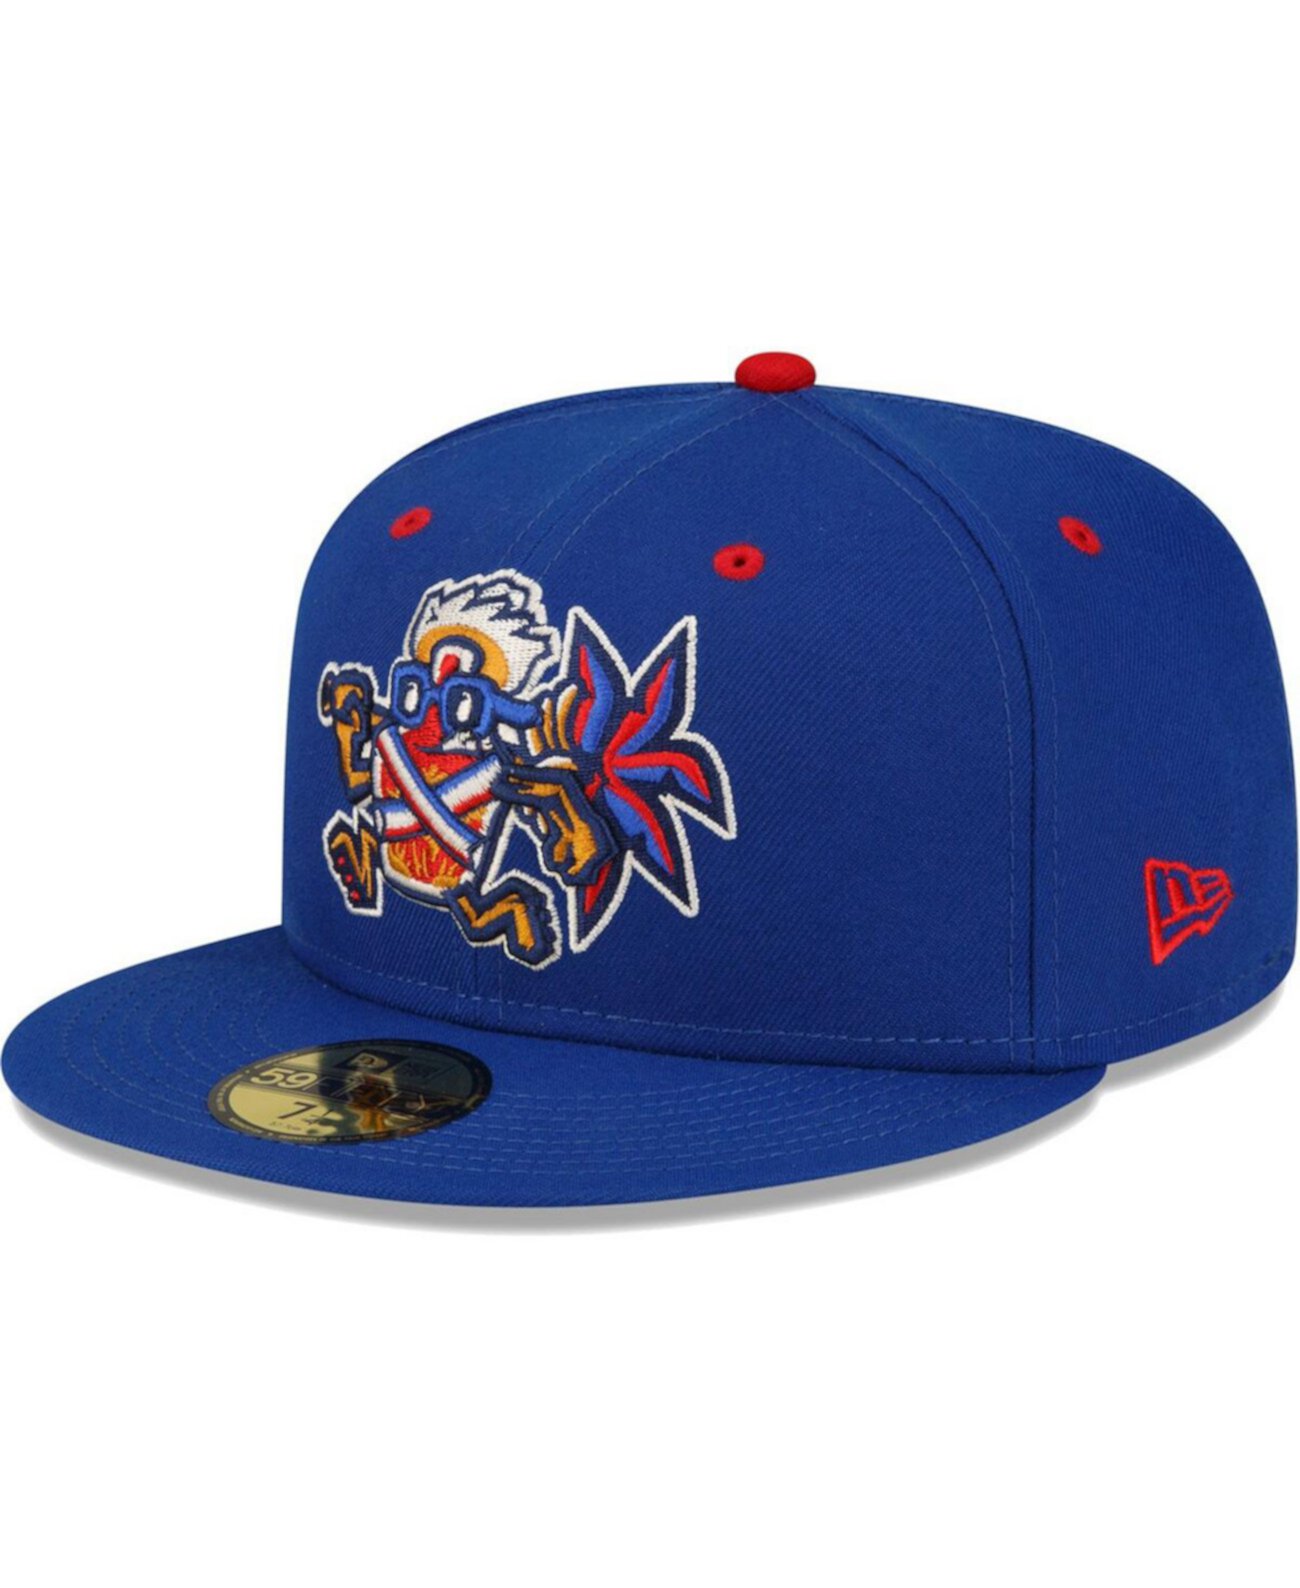 Мужская синяя приталенная шляпа Lehigh Valley IronPigs Copa De La Diversion 59FIFTY New Era